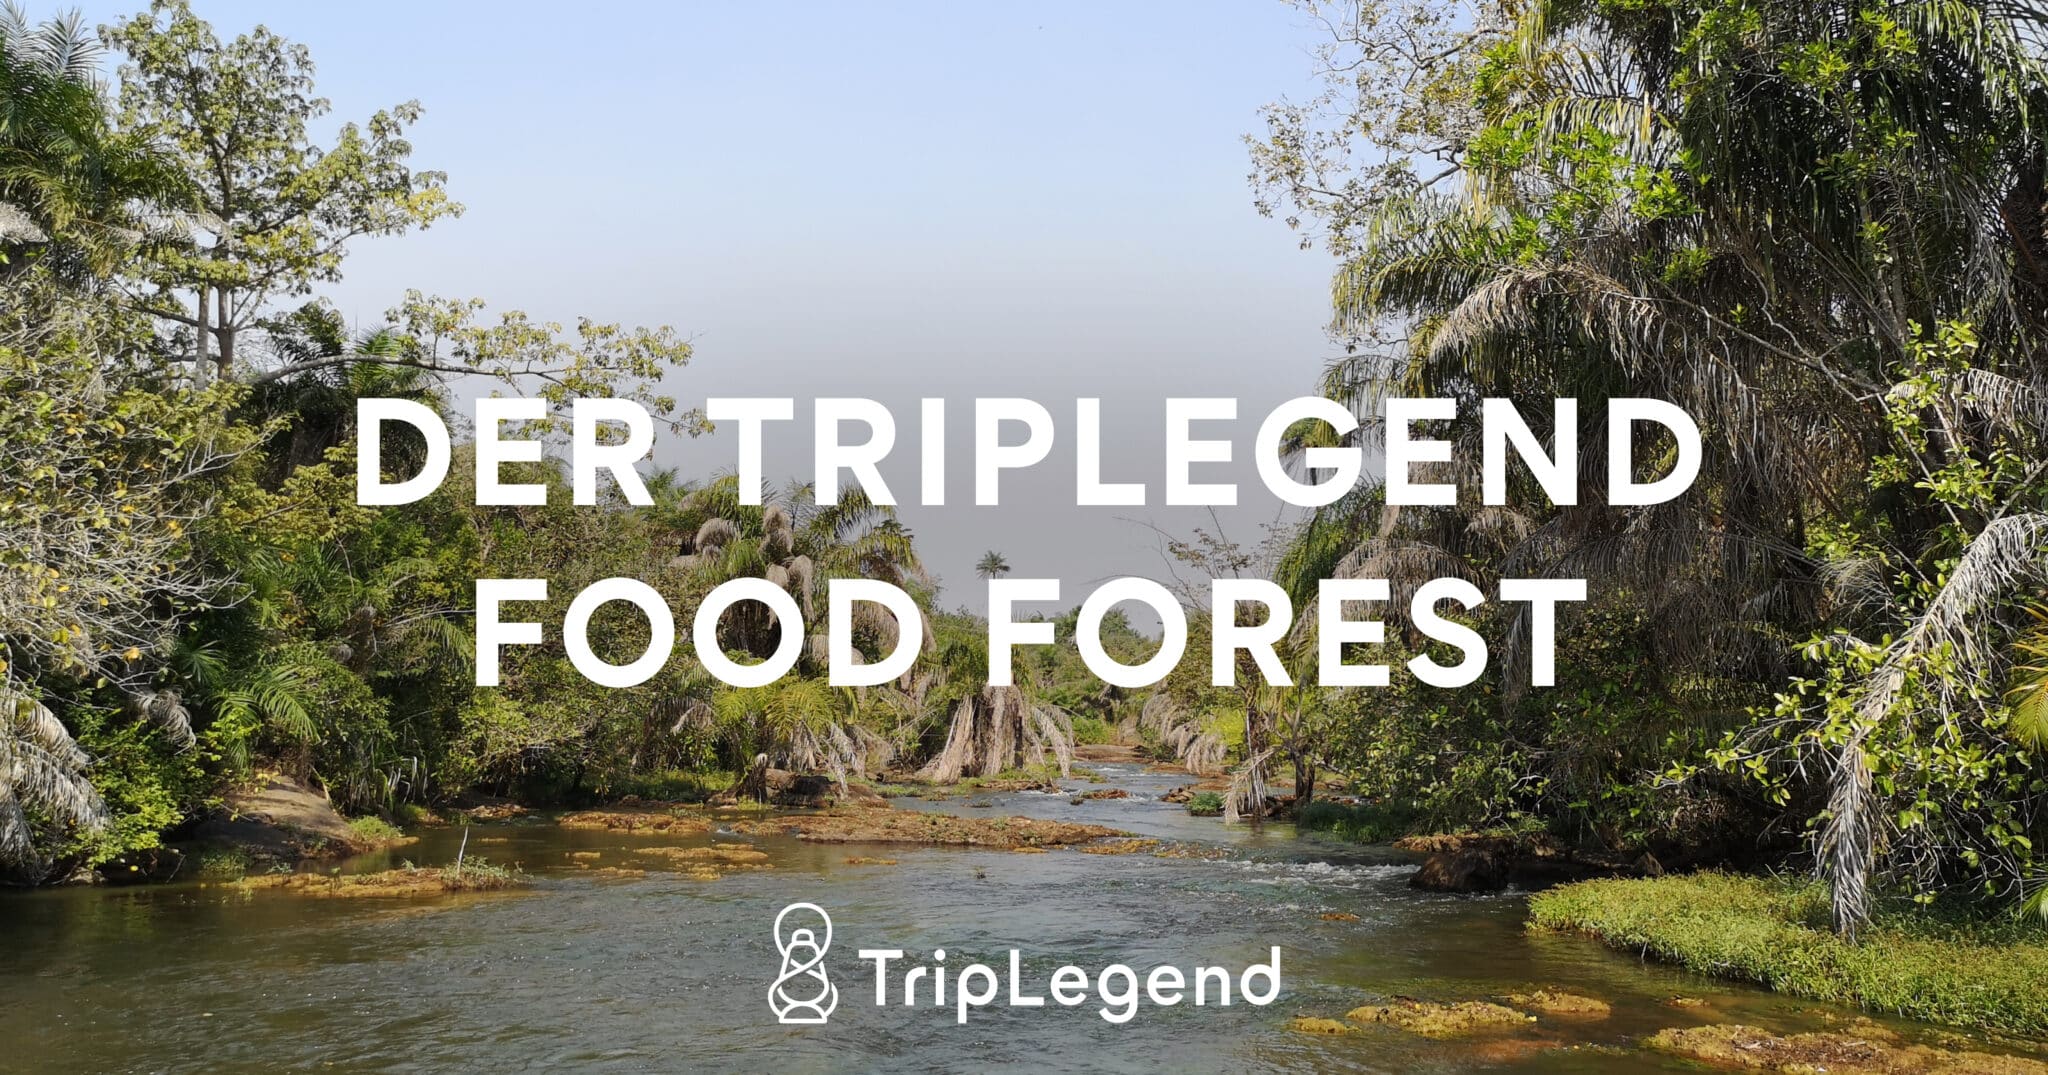 La foresta alimentare di TripLegend - Foresta alimentare